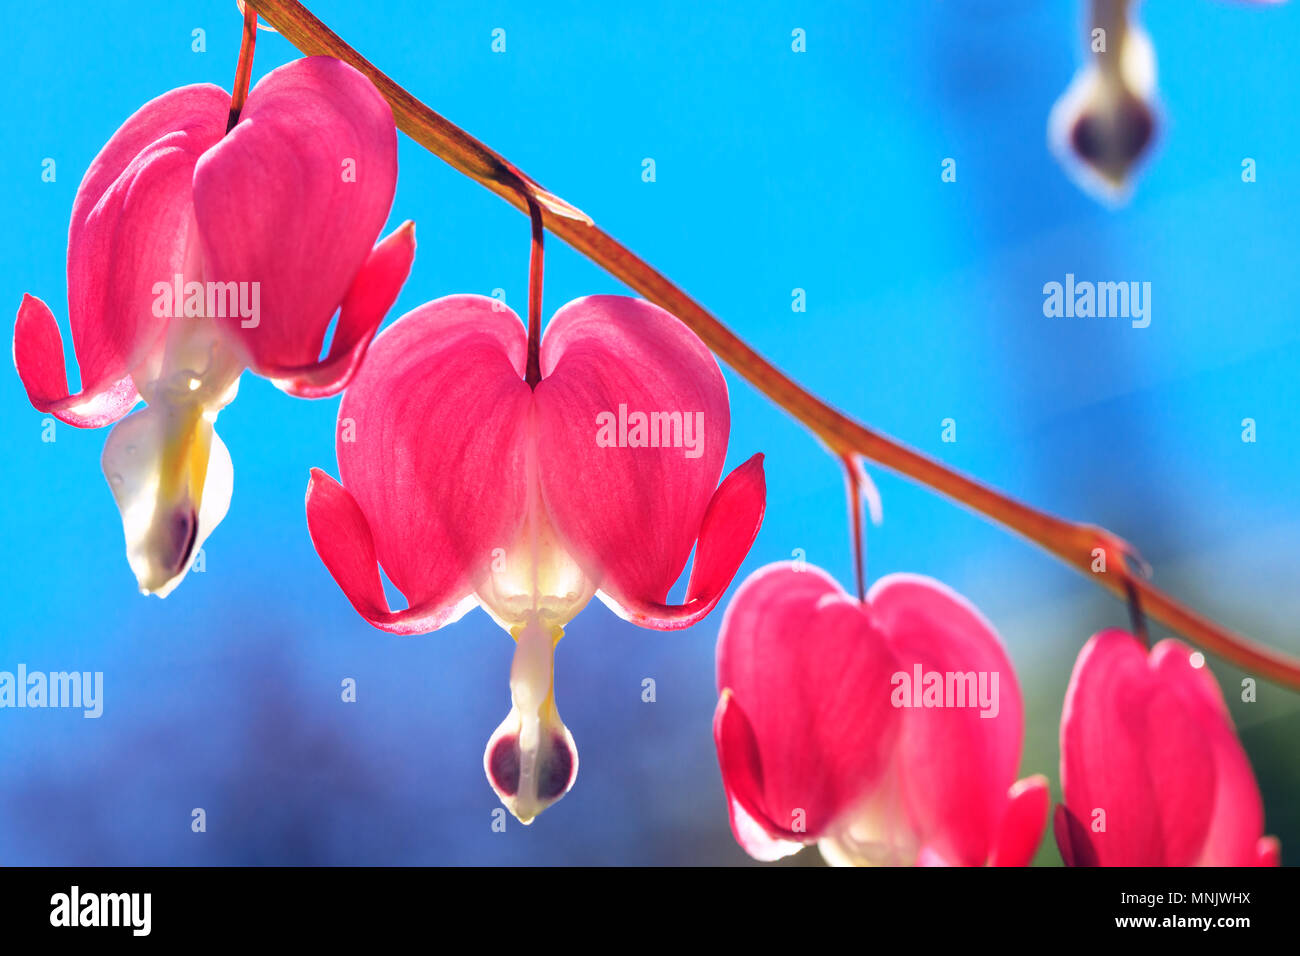 Die Herzförmigen rosa und weißen Blumen der blutenden Herzen. Lyra Blumen auf Hintergrund des blauen Himmels als Musik konzeptionelle Bild. Campanula pyramidalis Blume ist blos Stockfoto